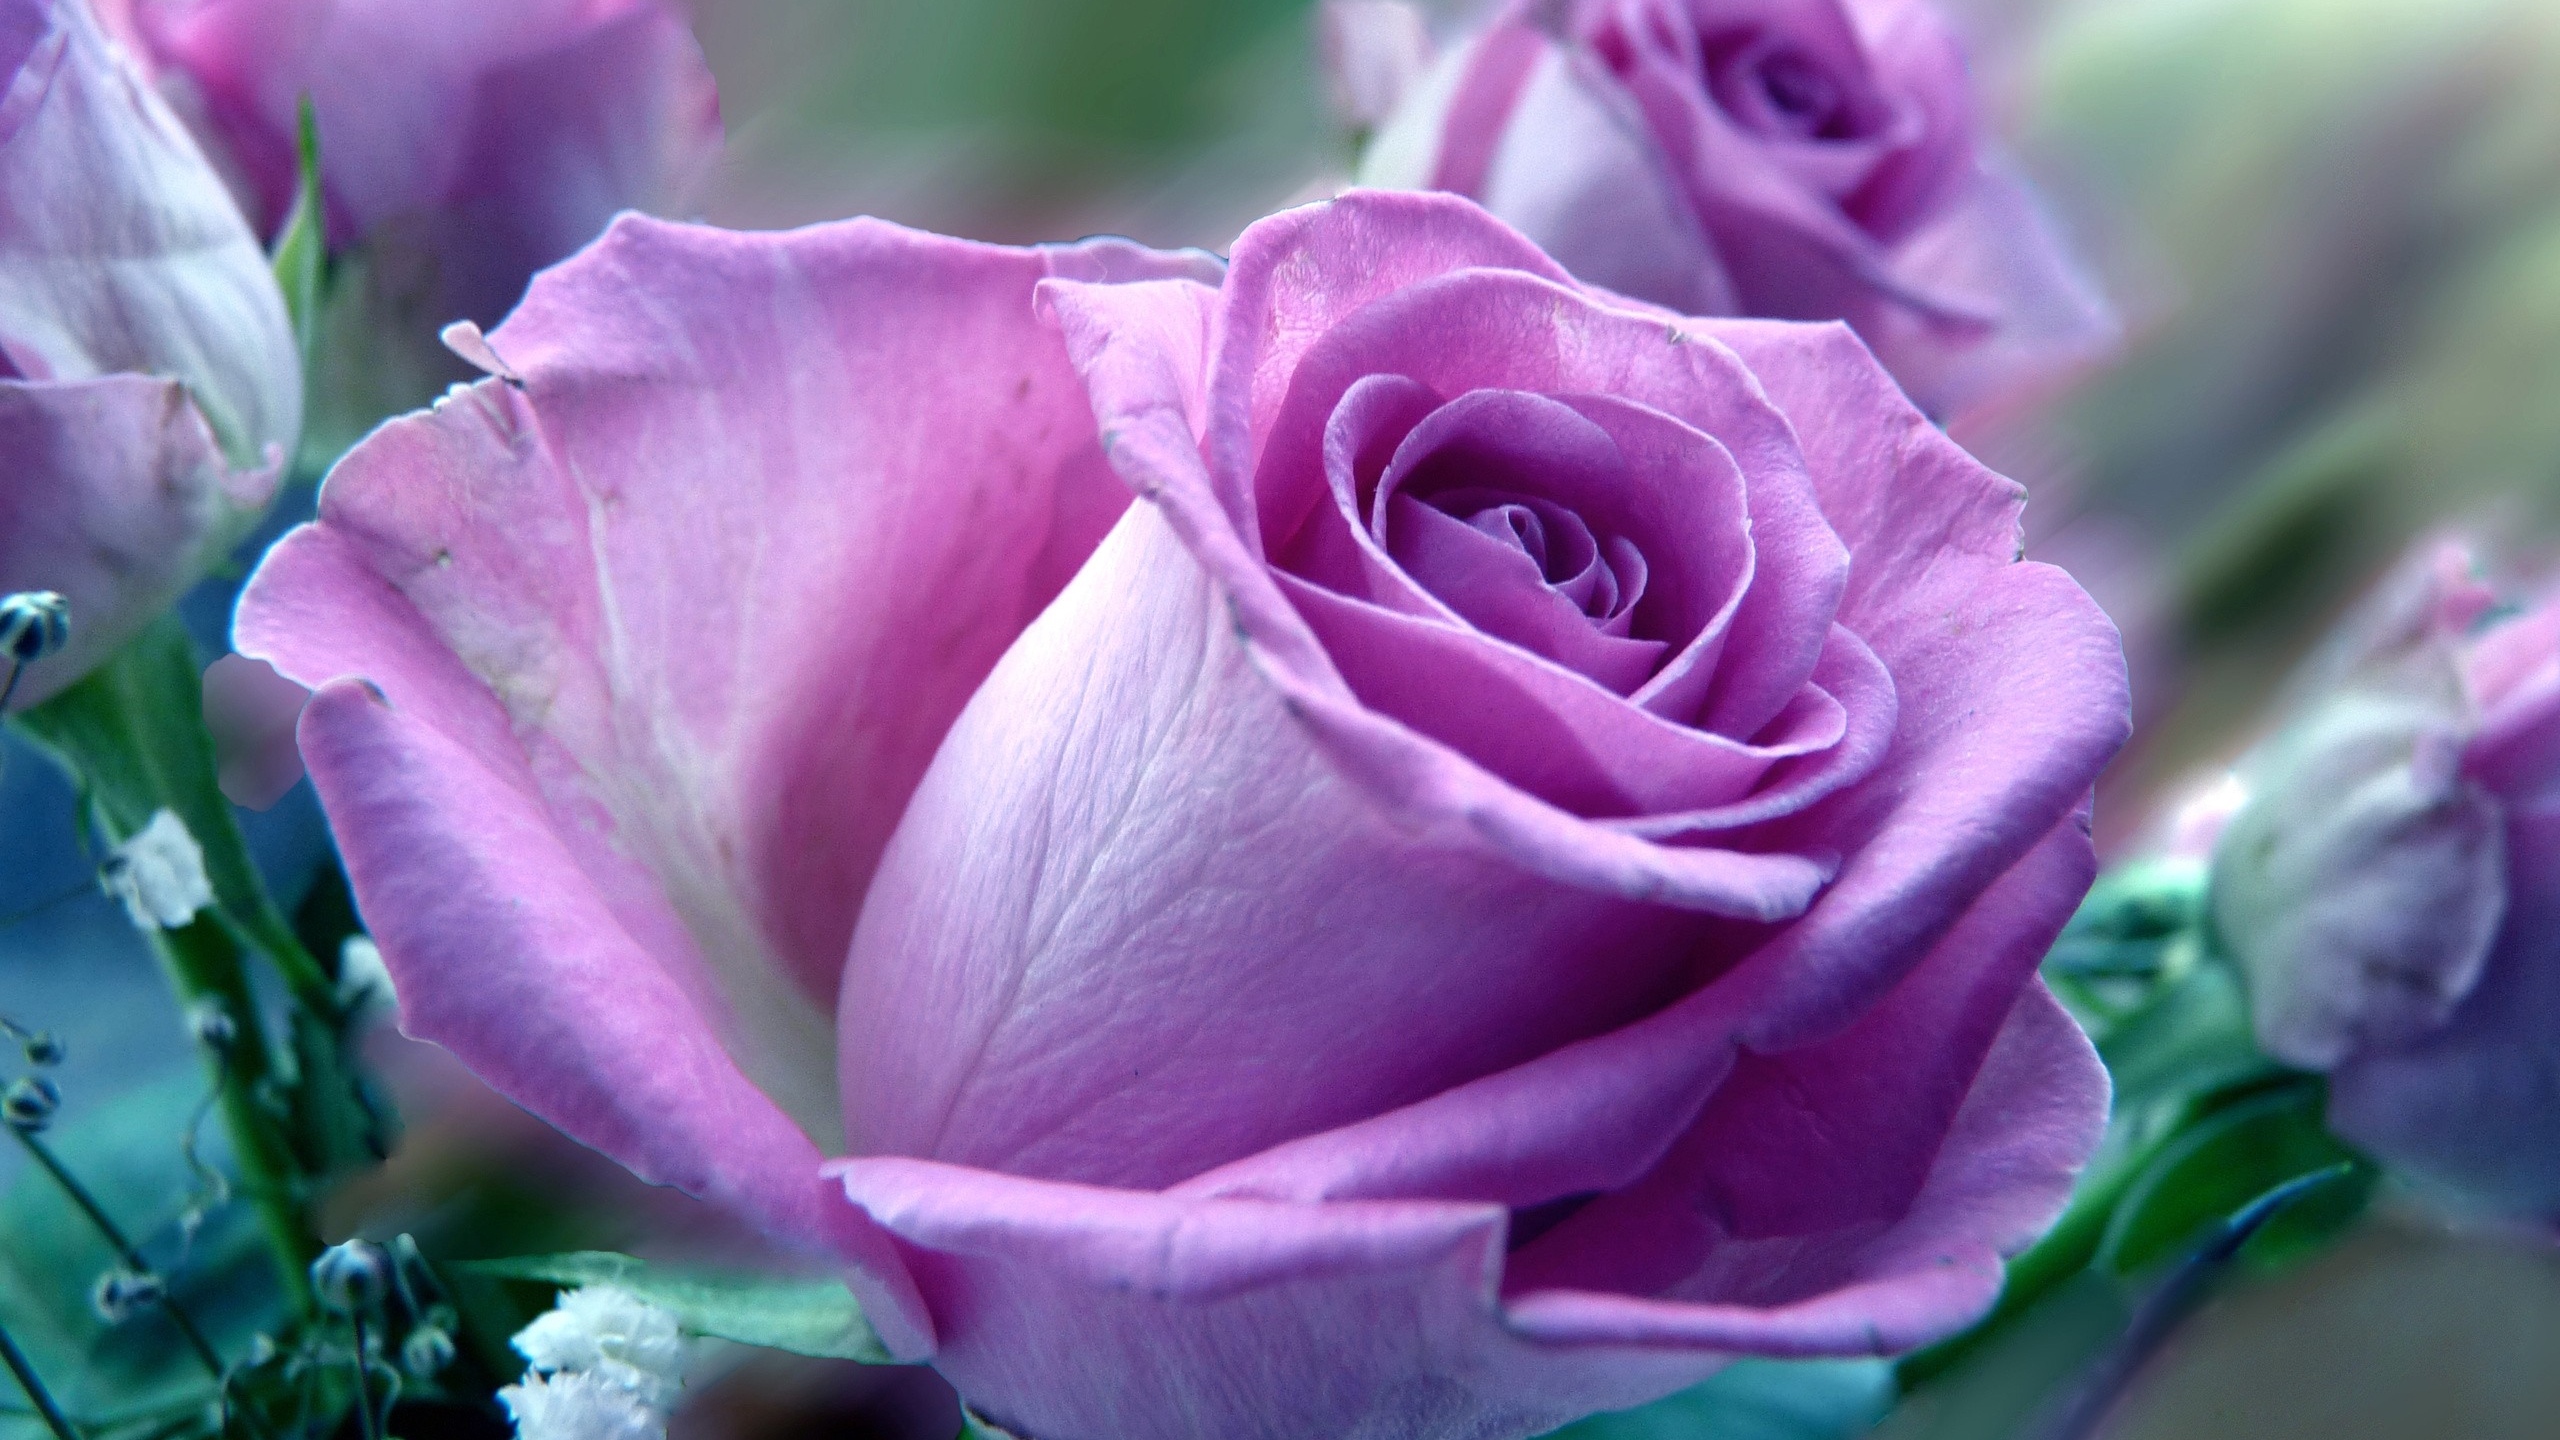 Wallpaper Flower, Rose, Nature - Beautiful Rose Full Screen - 2560x1440  Wallpaper 